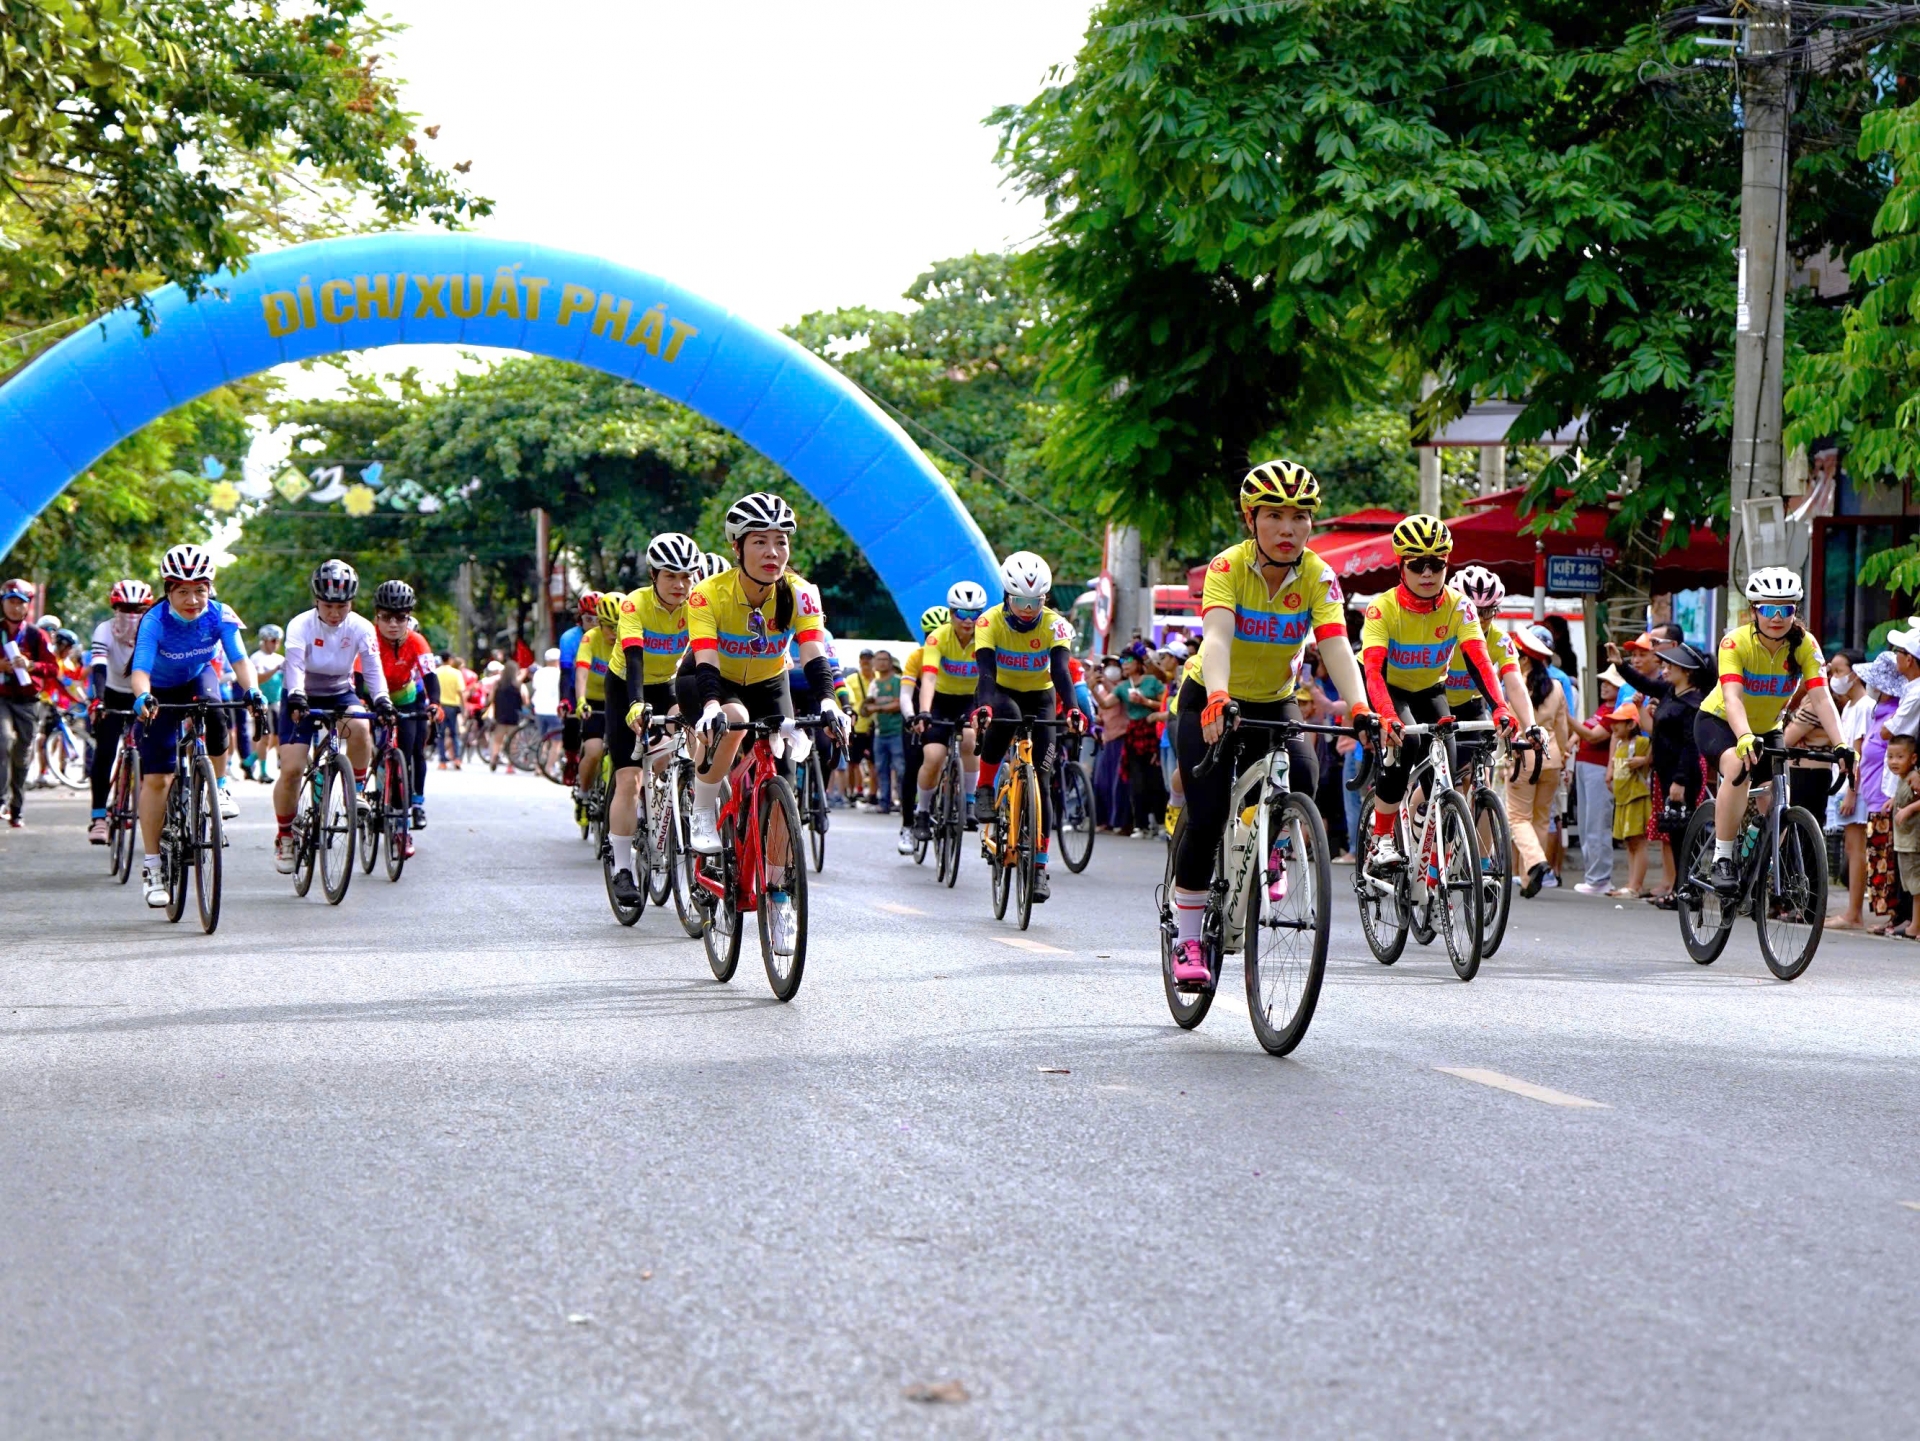 Quảng Trị: Khởi tranh giải đua xe đạp “Điểm đến hòa bình”